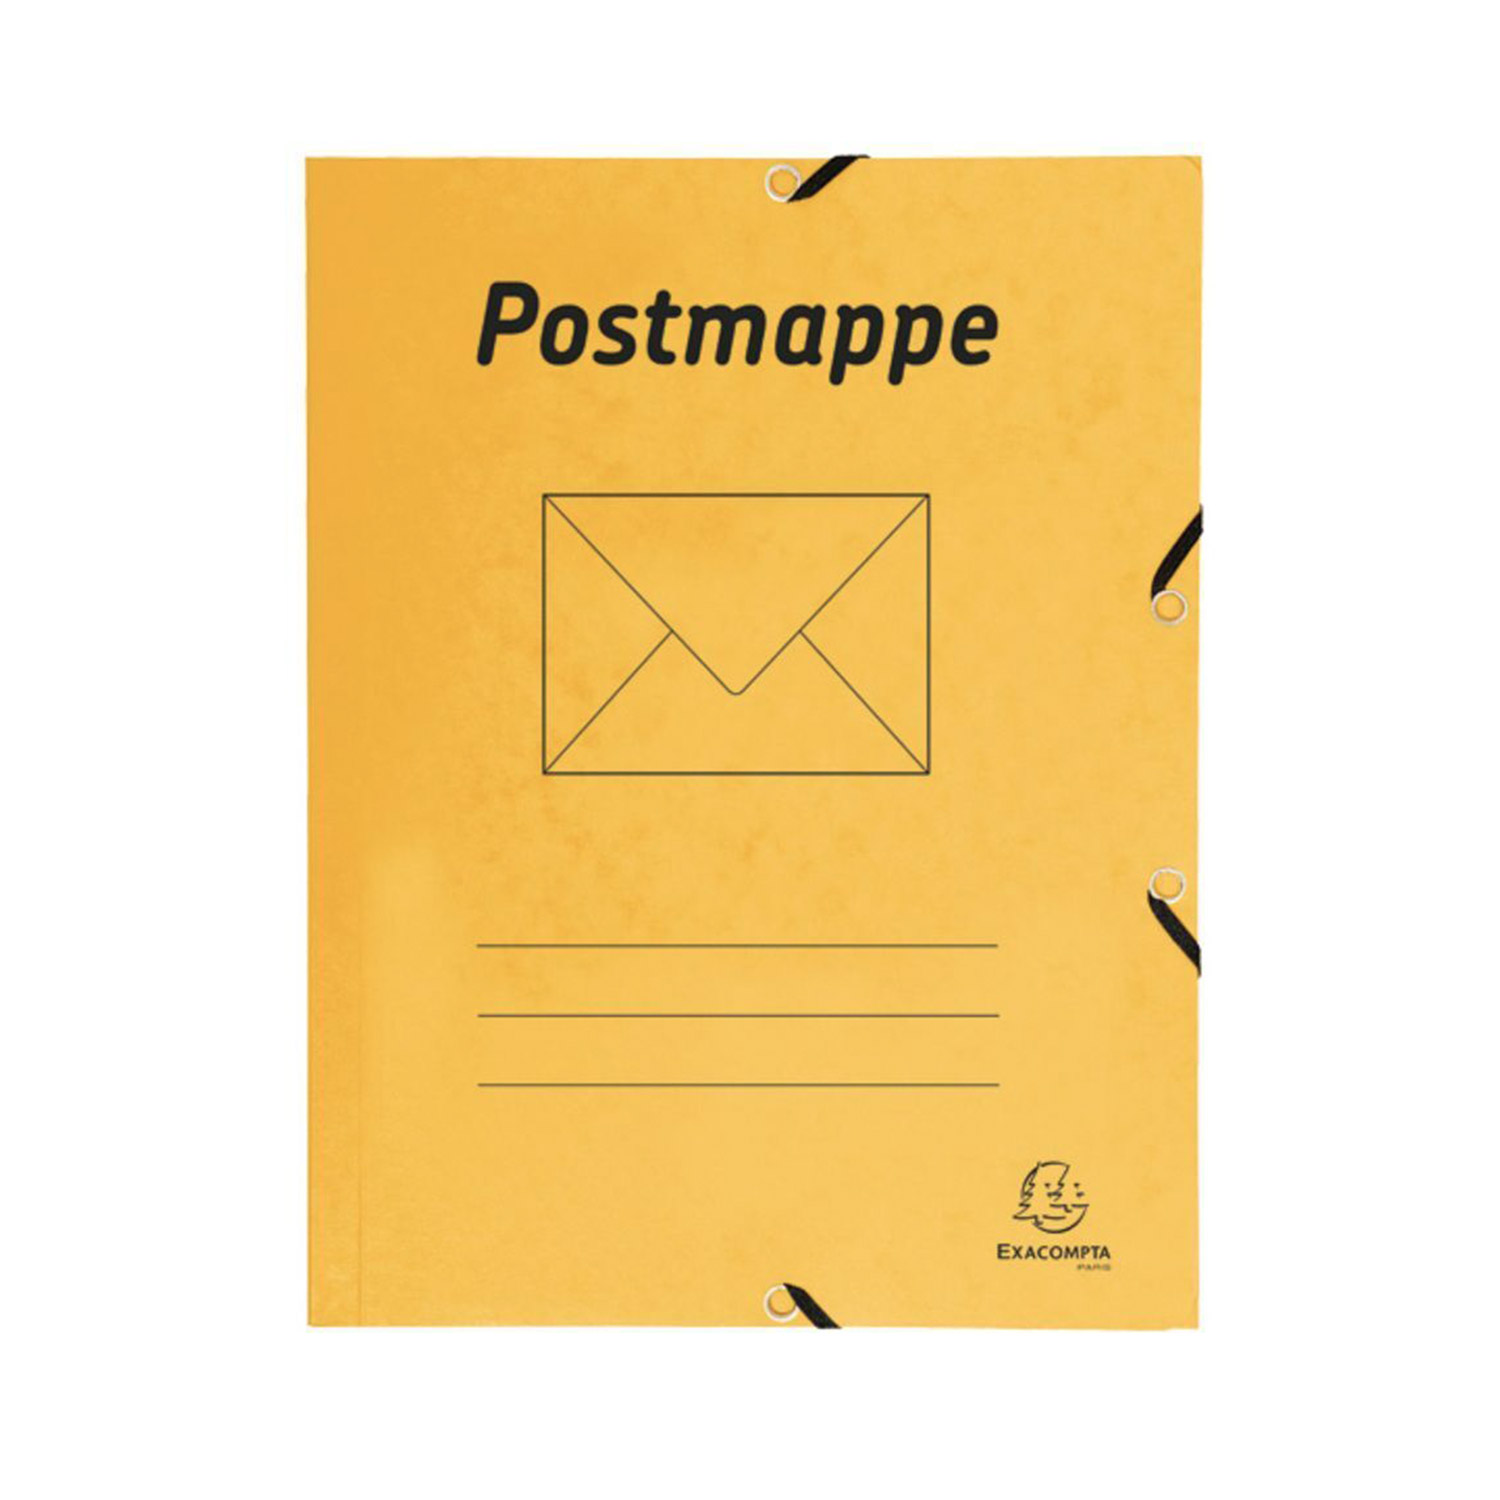 Postmappe A4 aus Karton gelb 